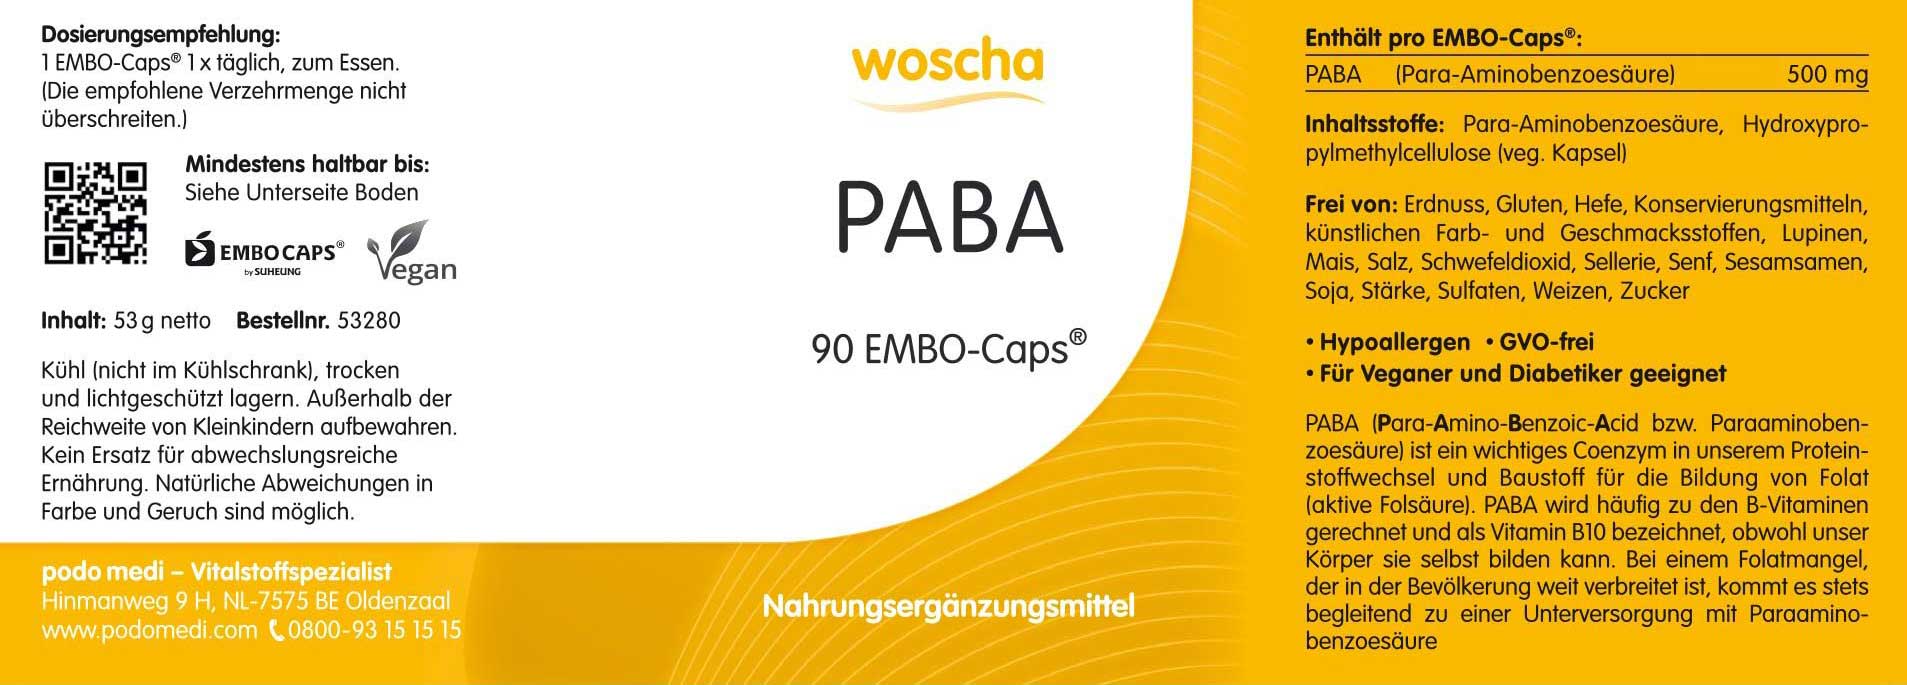 Woscha PABA von podo medi beinhaltet 90 Kapseln Etikett